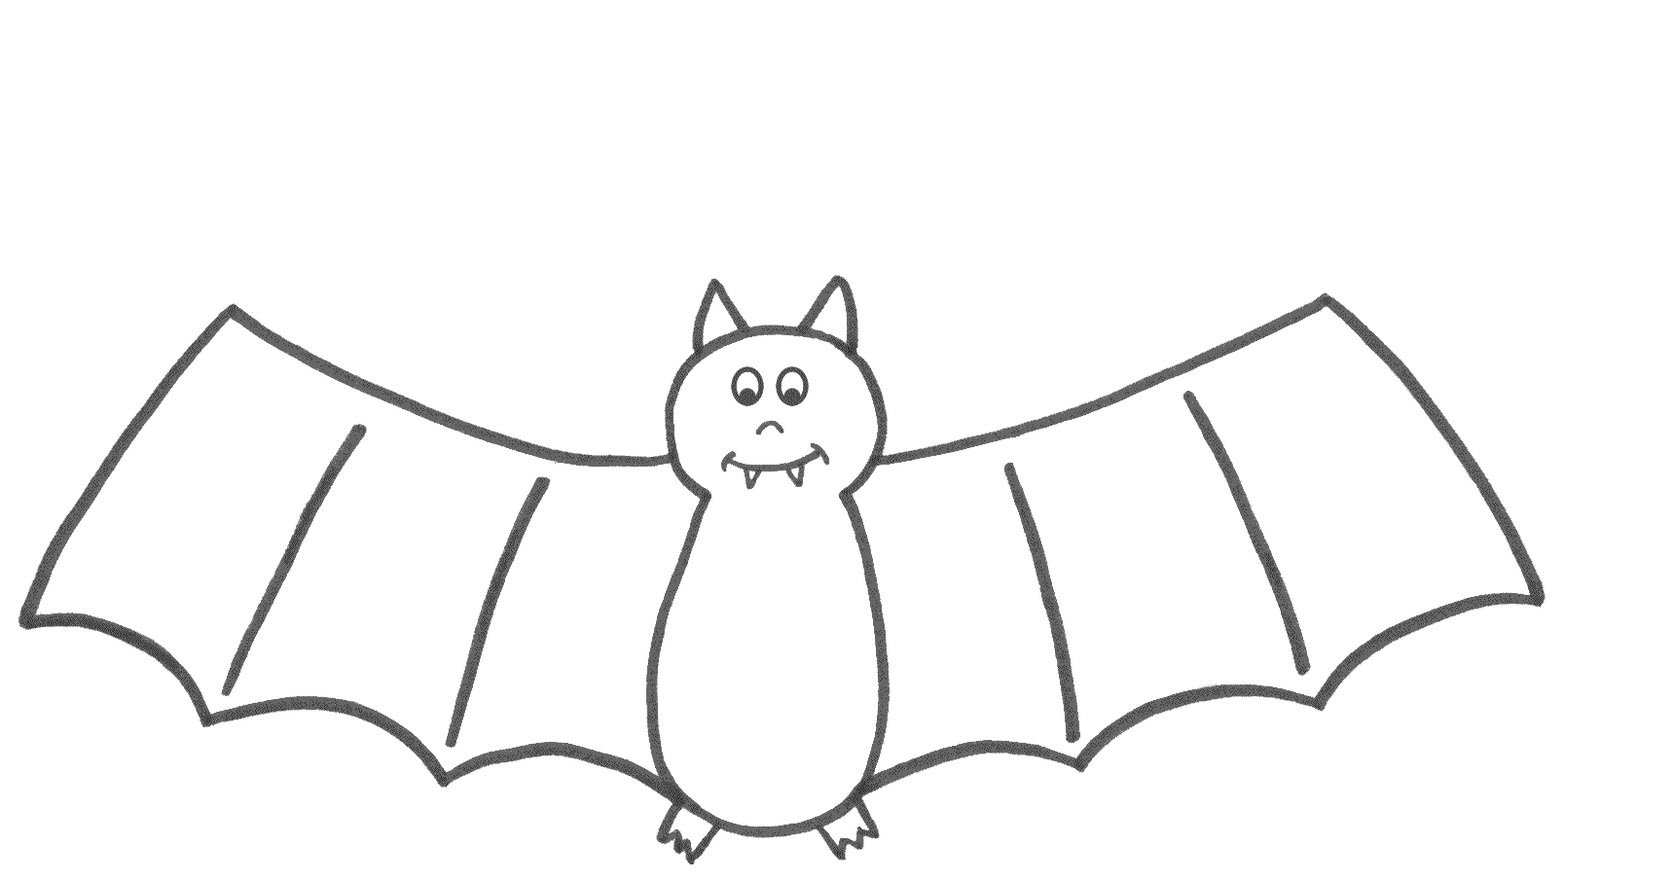 Bat Drawing Template at GetDrawings | Free download